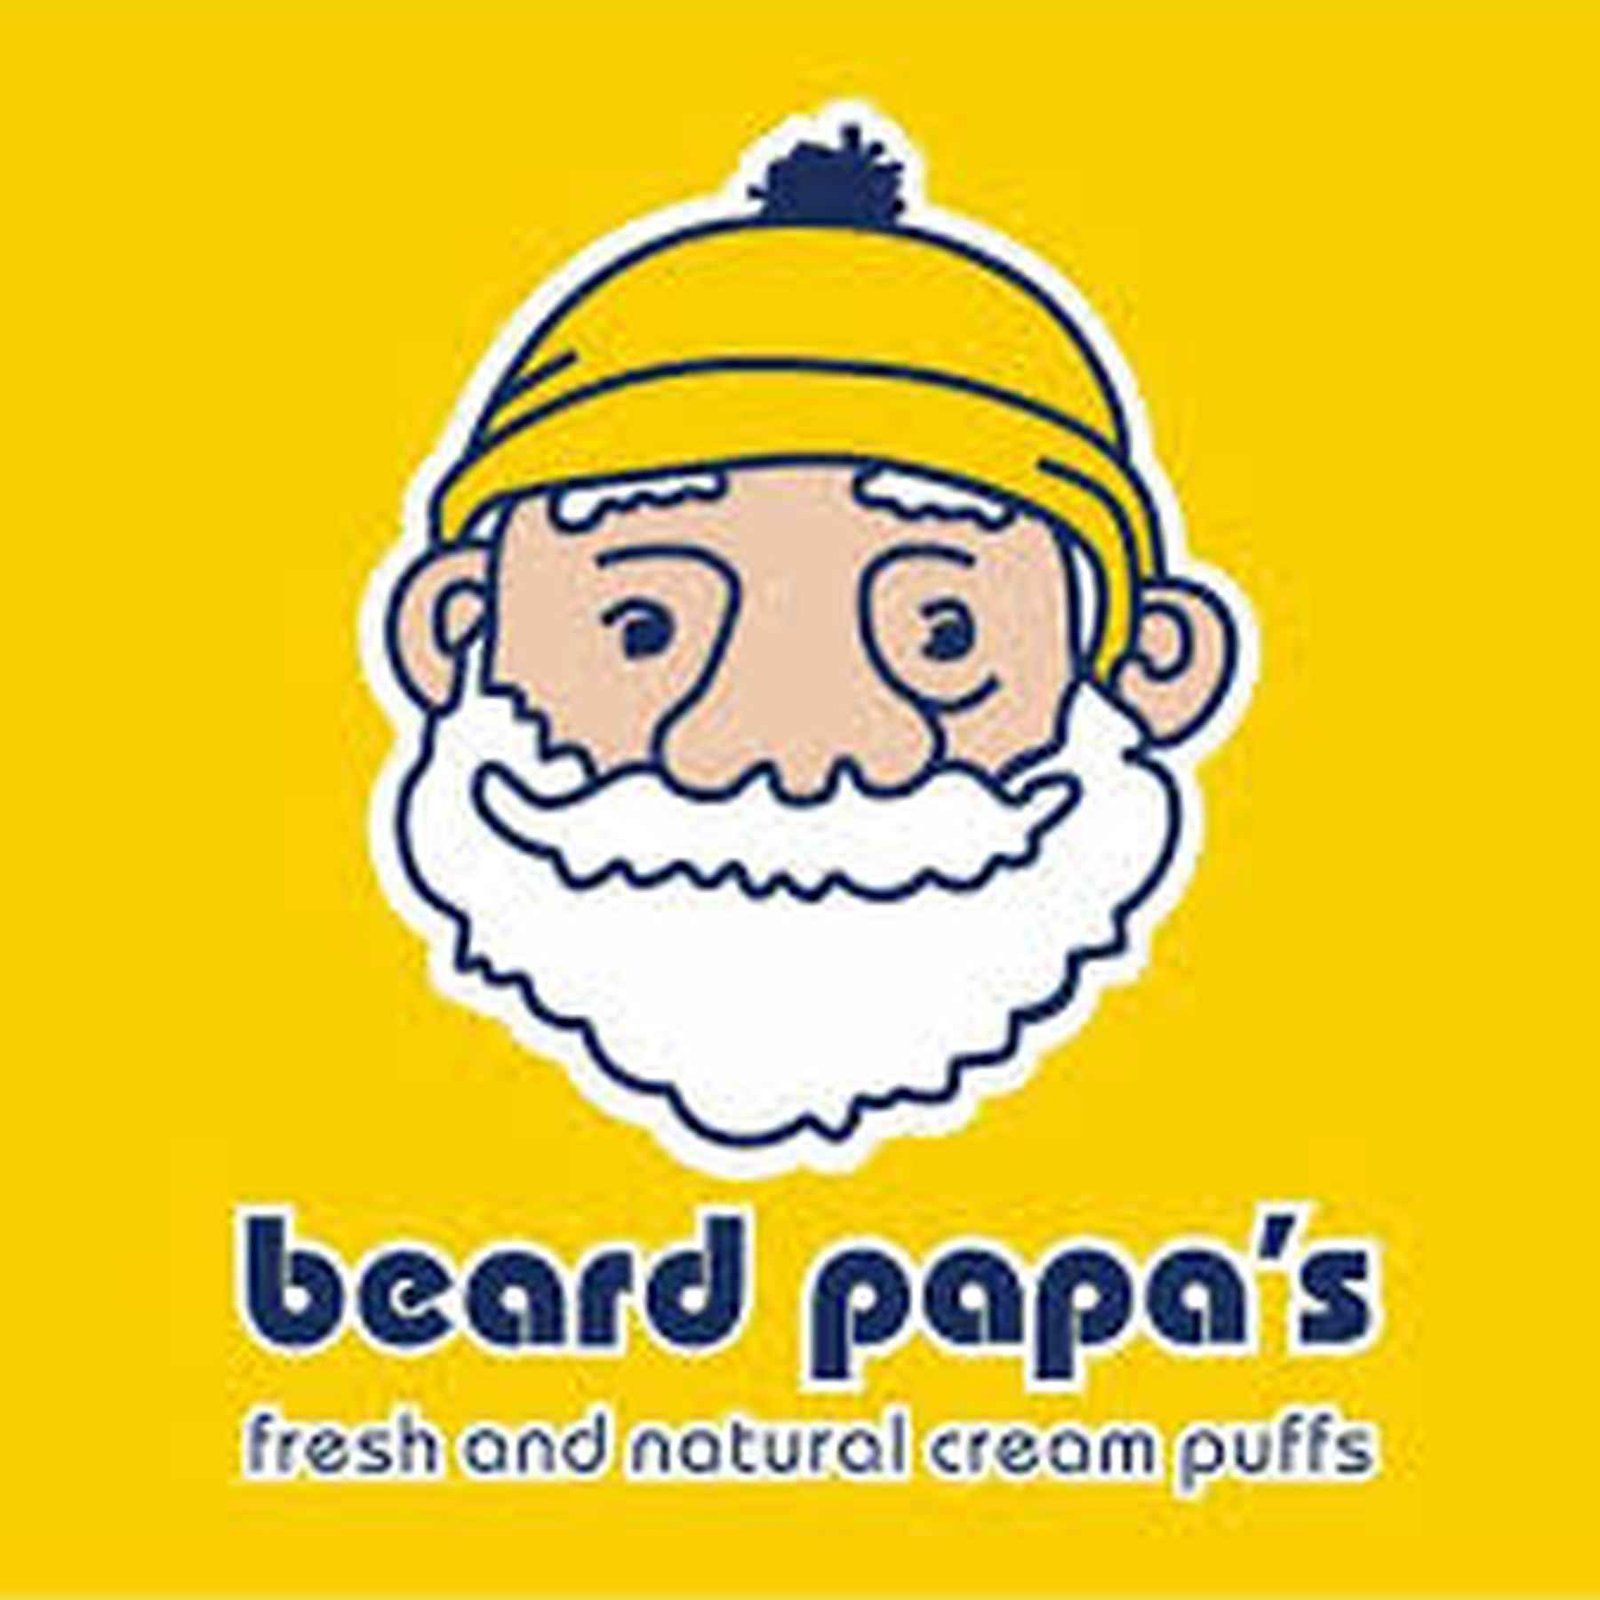 beard papa